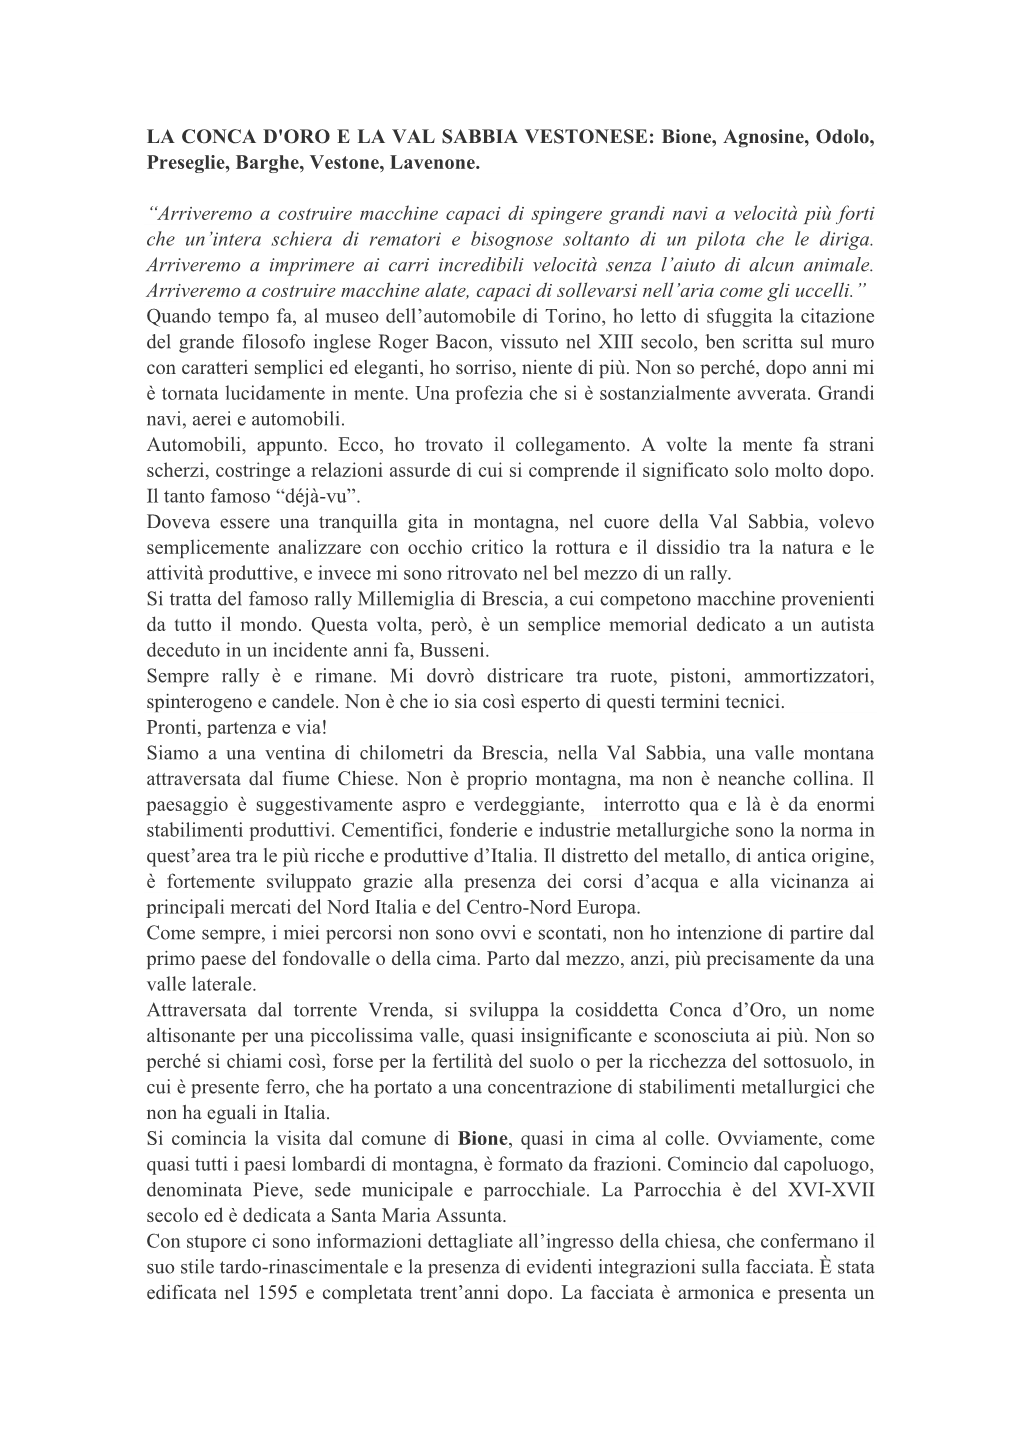 LA CONCA D'oro E LA VAL SABBIA VESTONESE: Bione, Agnosine, Odolo, Preseglie, Barghe, Vestone, Lavenone